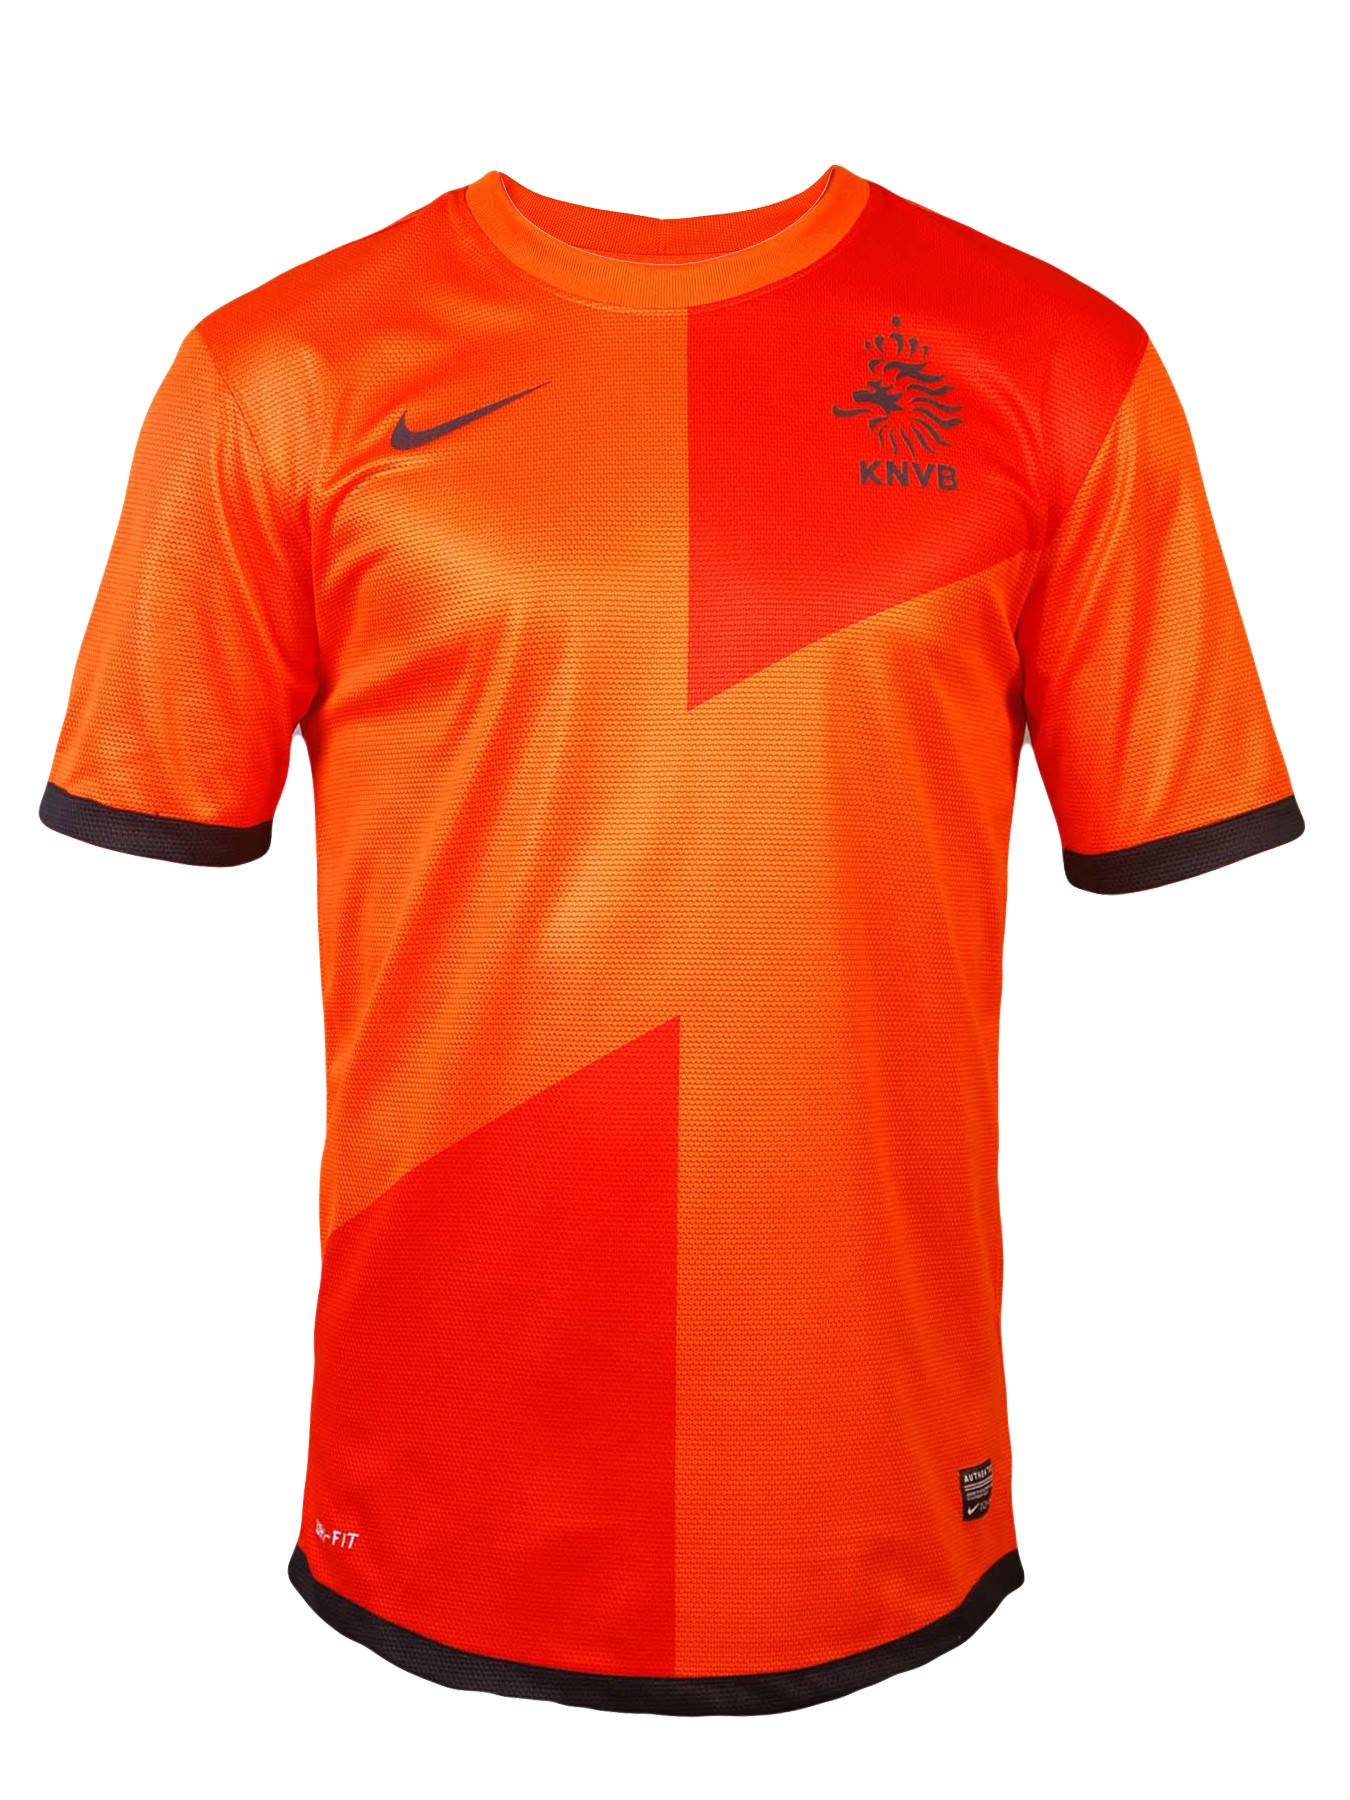 Hình nền Holland jersey (6) - hình nền bóng đá - hình nền cầu thủ - hình nền đội bóng